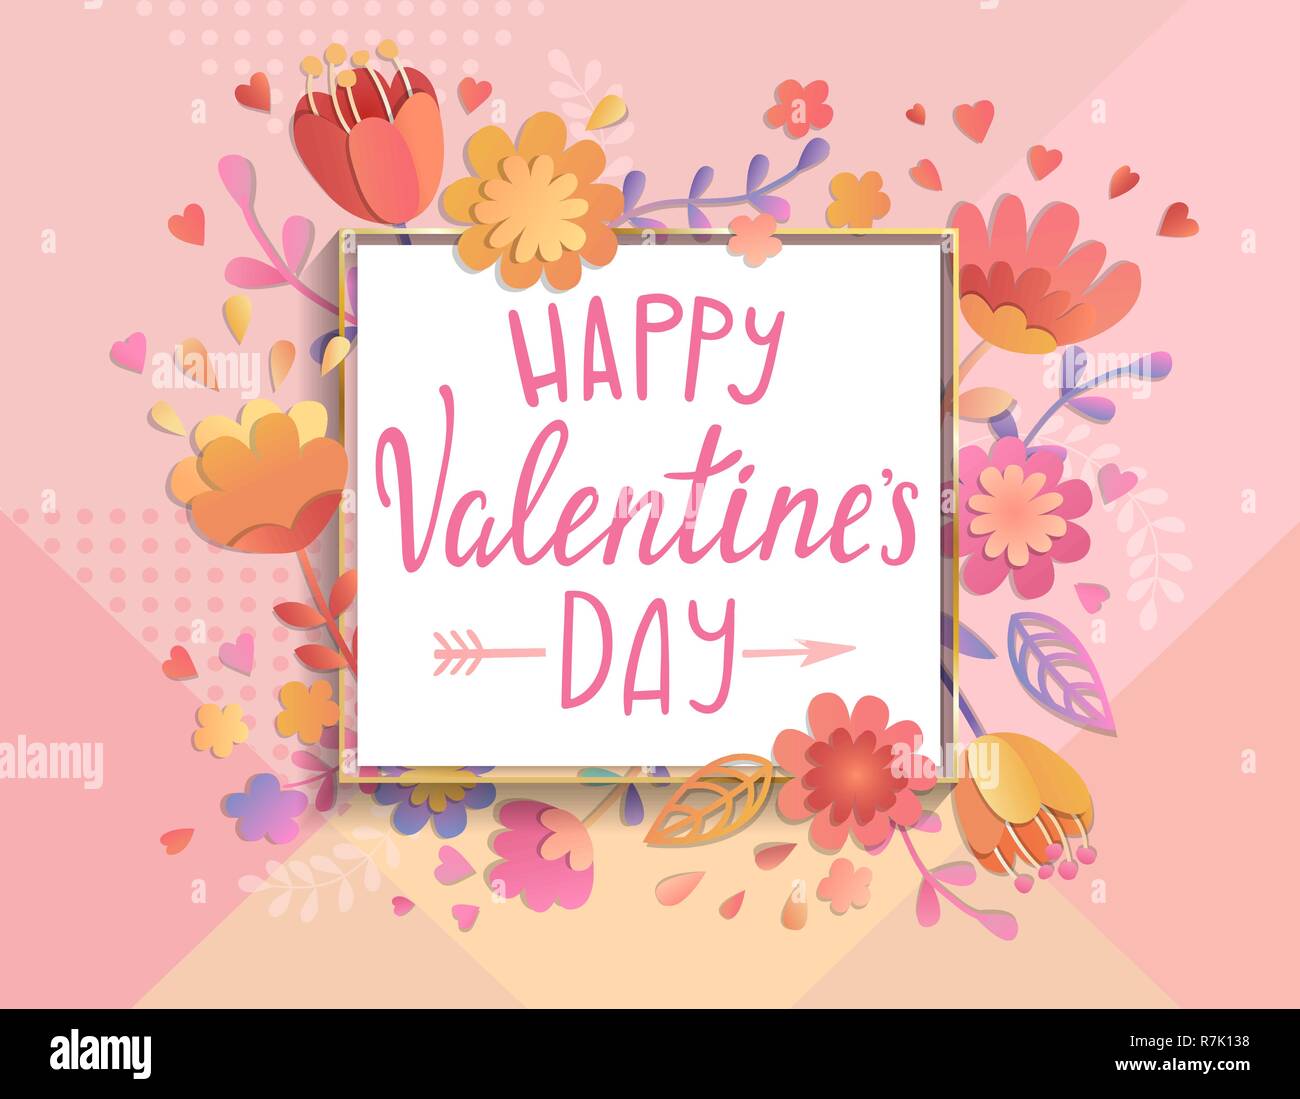 Happy Valentines Day card modèle avec cadre carré sur fond géométrique avec l'ornement floral. Message d'affiches, brochures, bannières, invitation. Vector illustration. Illustration de Vecteur